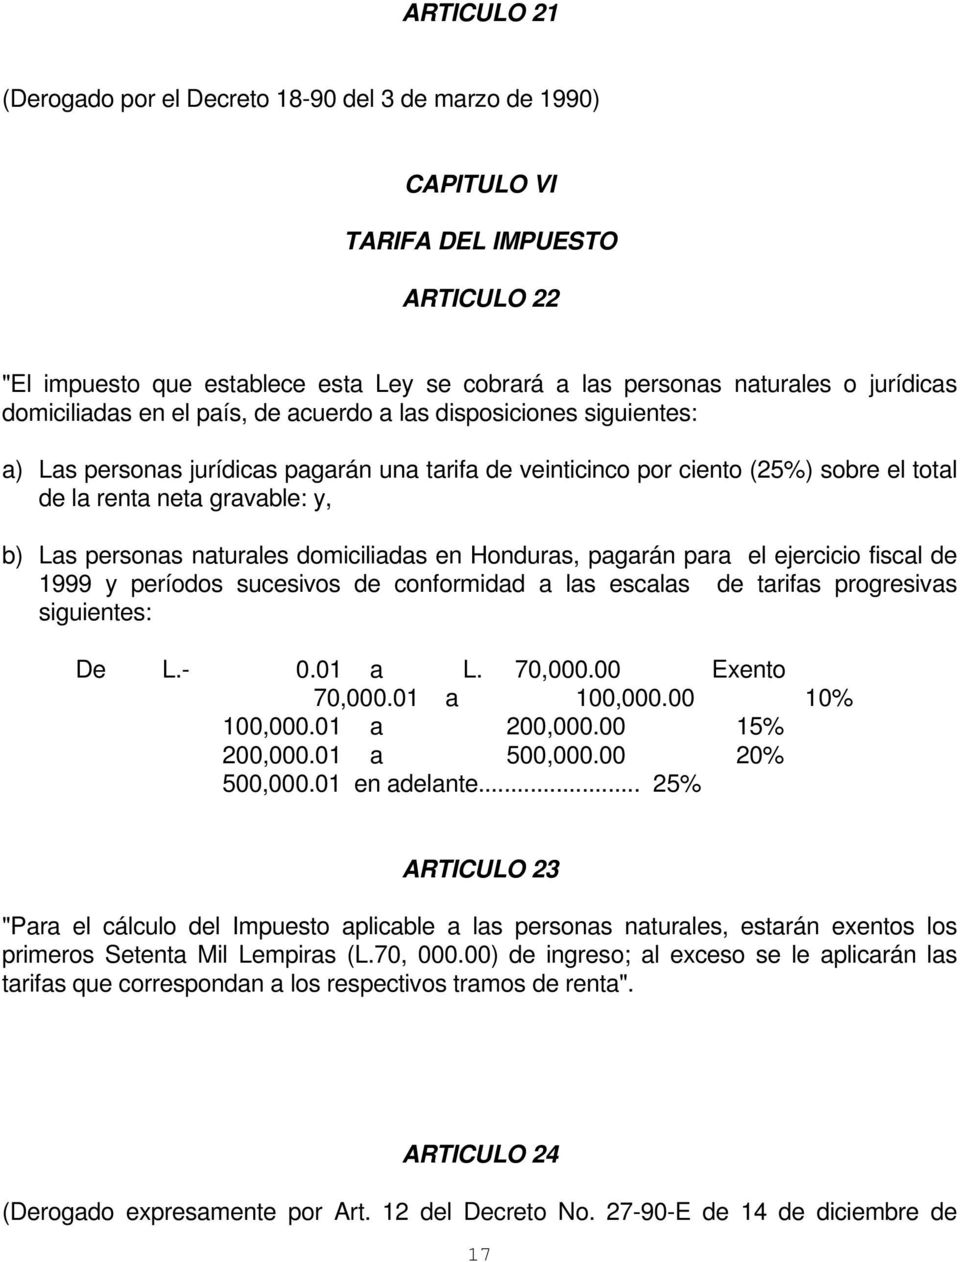 personas naturales domiciliadas en Honduras, pagarán para el ejercicio fiscal de 1999 y períodos sucesivos de conformidad a las escalas de tarifas progresivas siguientes: De L.- 0.01 a L. 70,000.